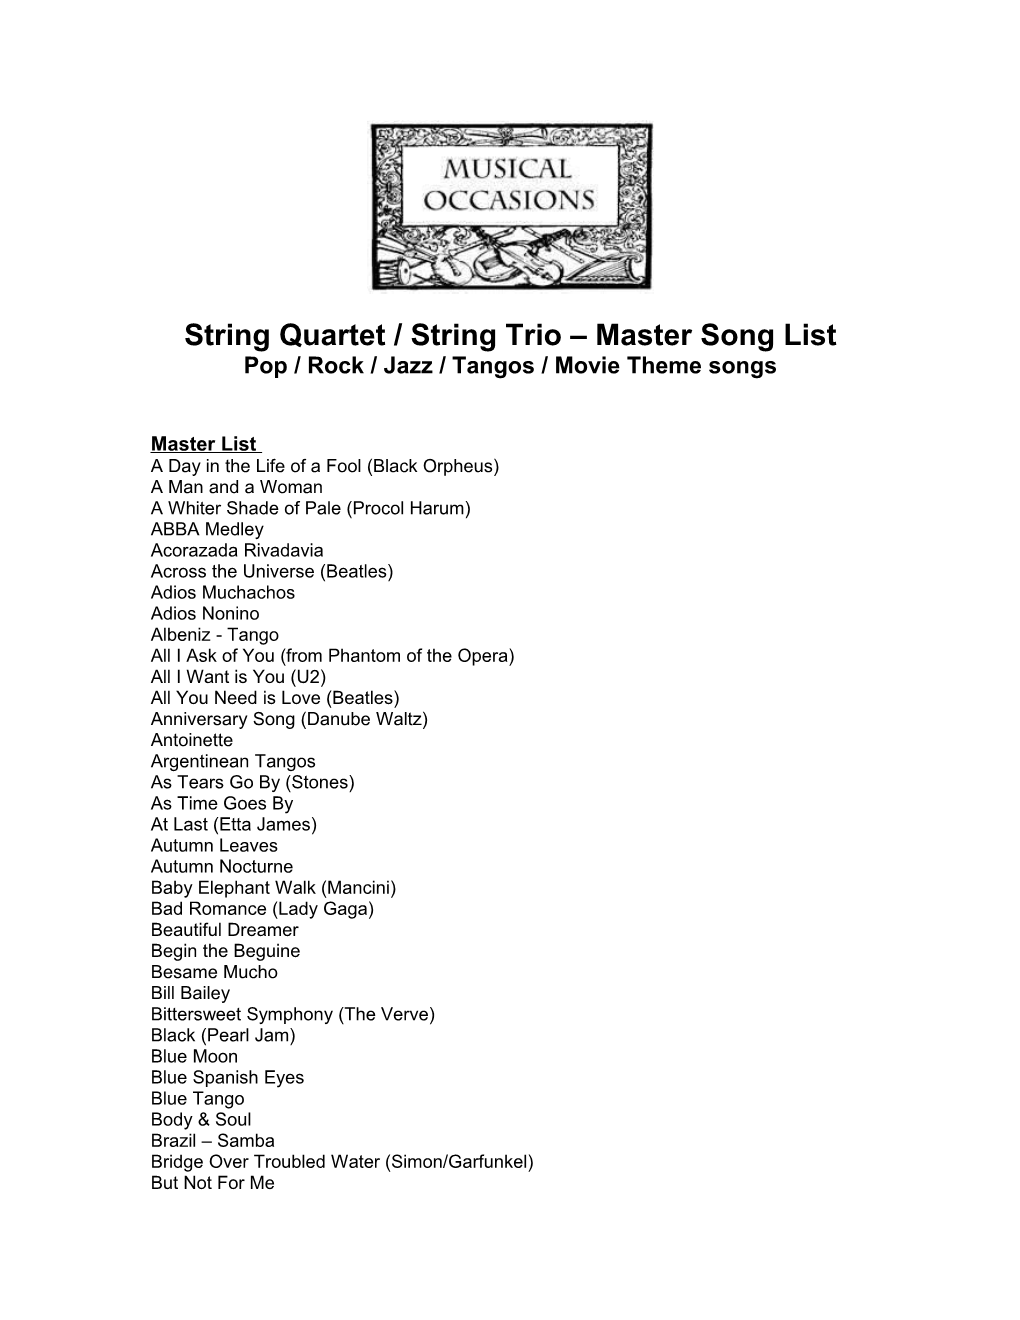 String Trio / String Quartet